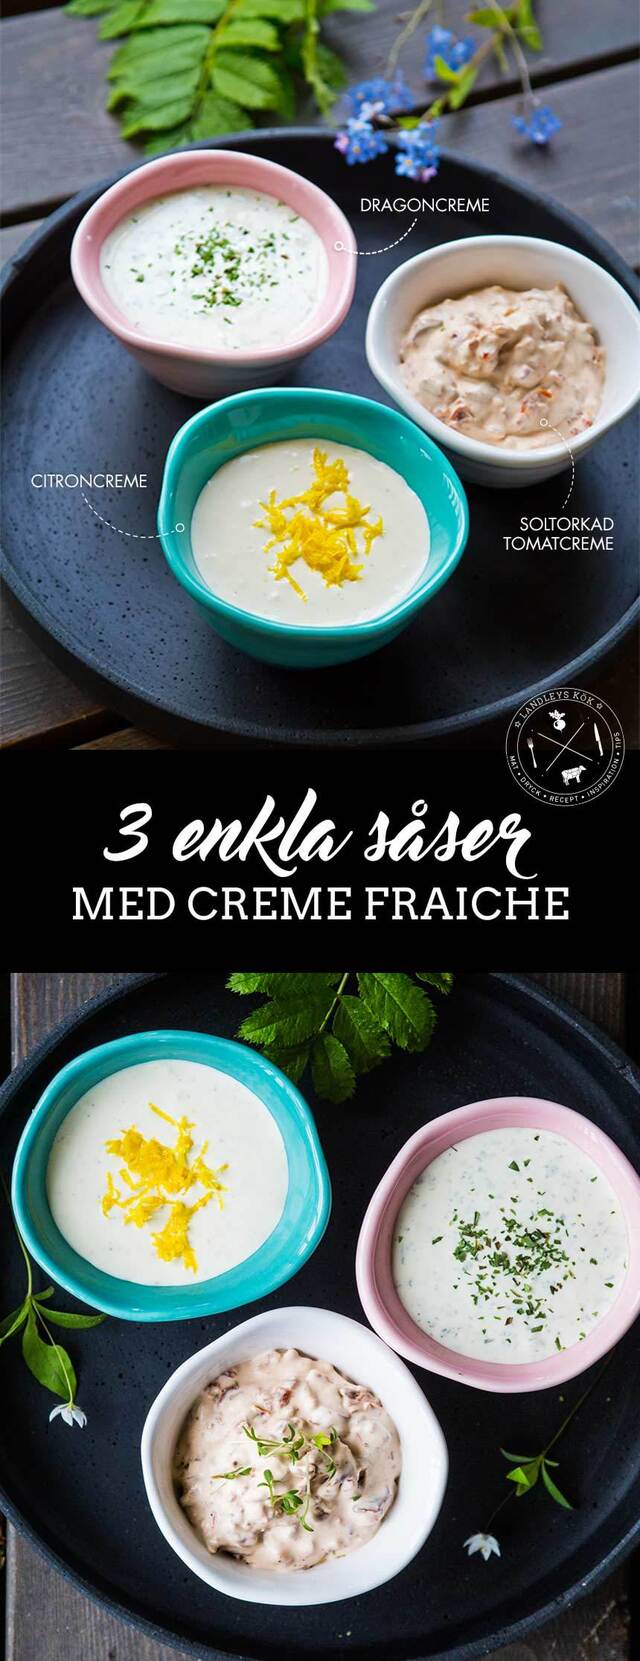 3 enkla såser med creme fraiche - Landleys Kök